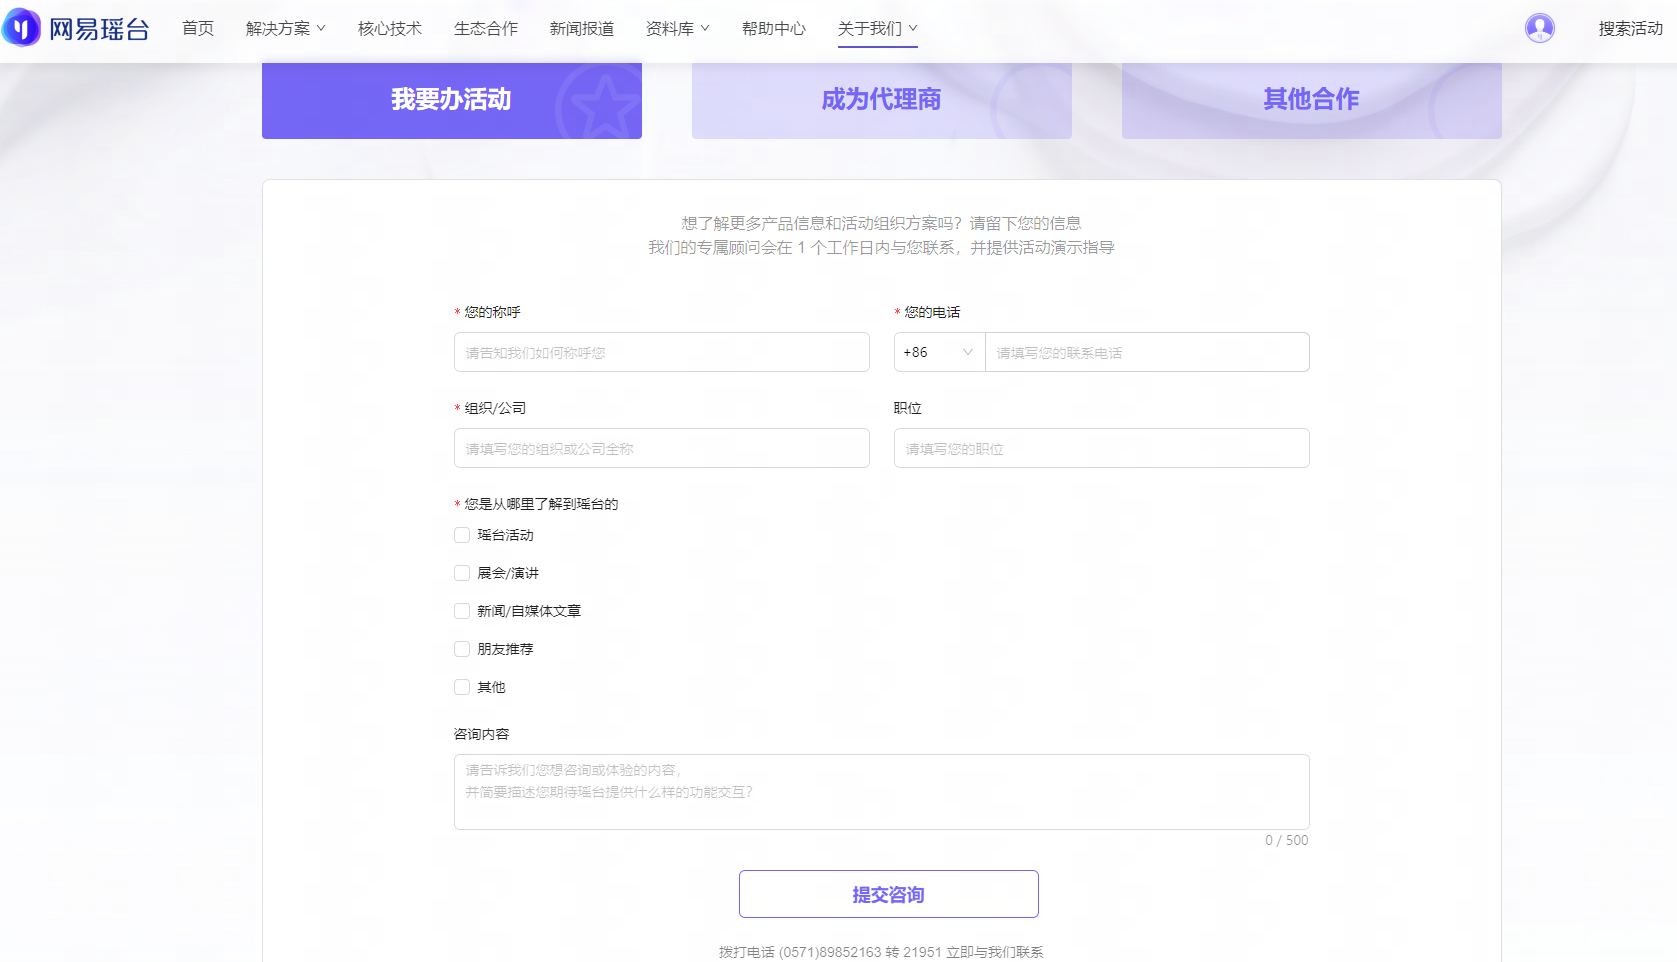 这是一个中文网页截图，显示注册页面，包含用户名、密码输入框，以及性别、验证码等选项和注册按钮。